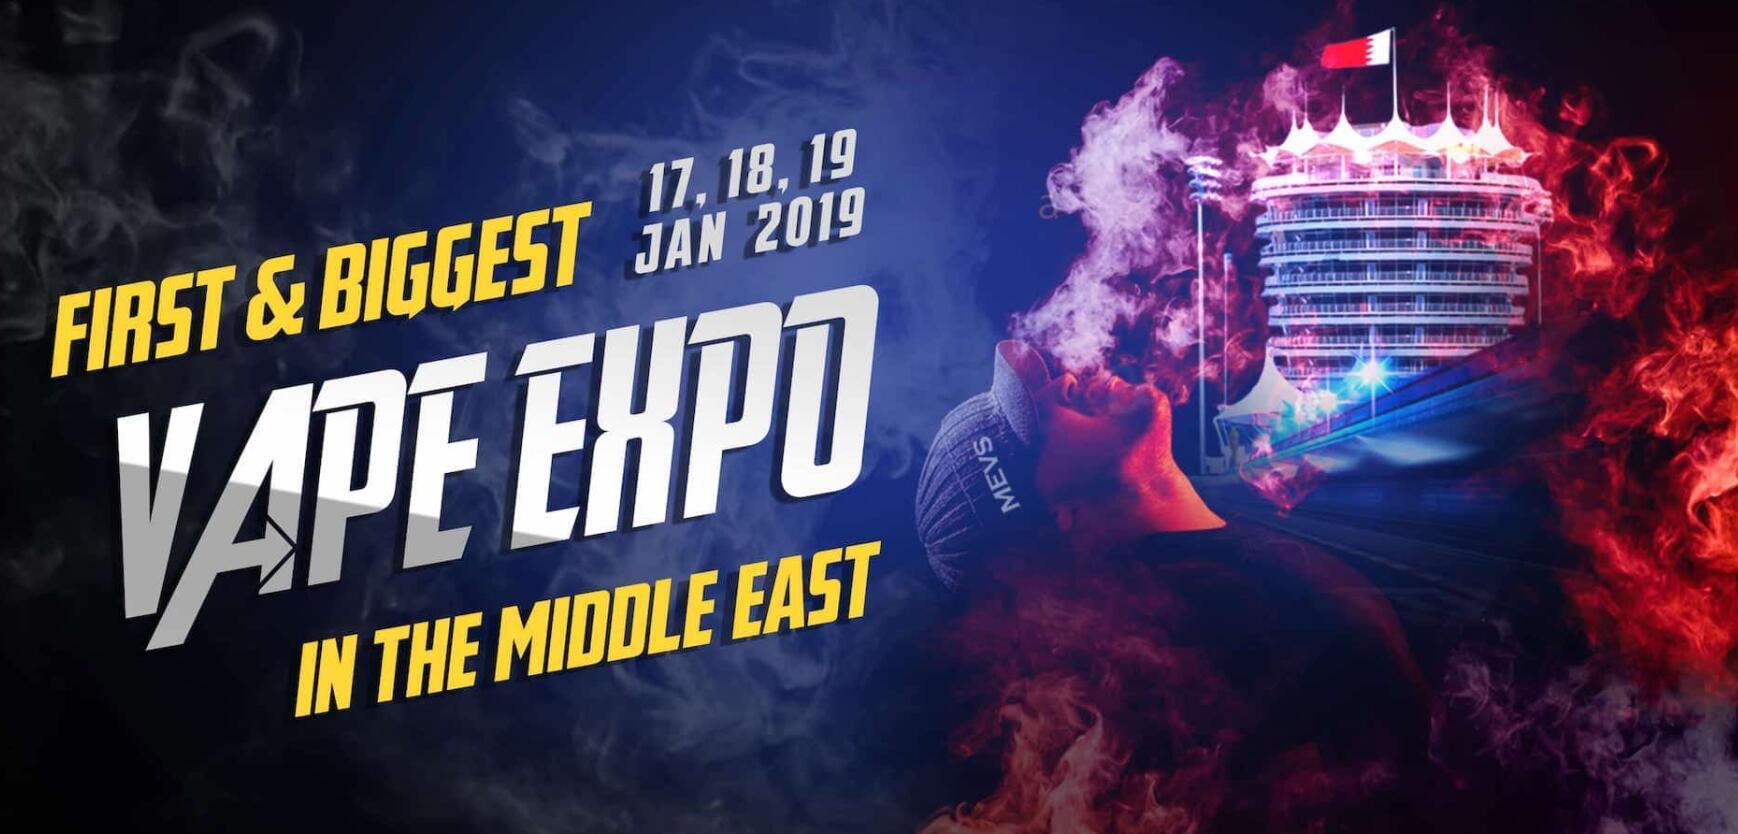 Ближневосточное вейп-шоу пройдет с 17 по 19 января 2019 года.